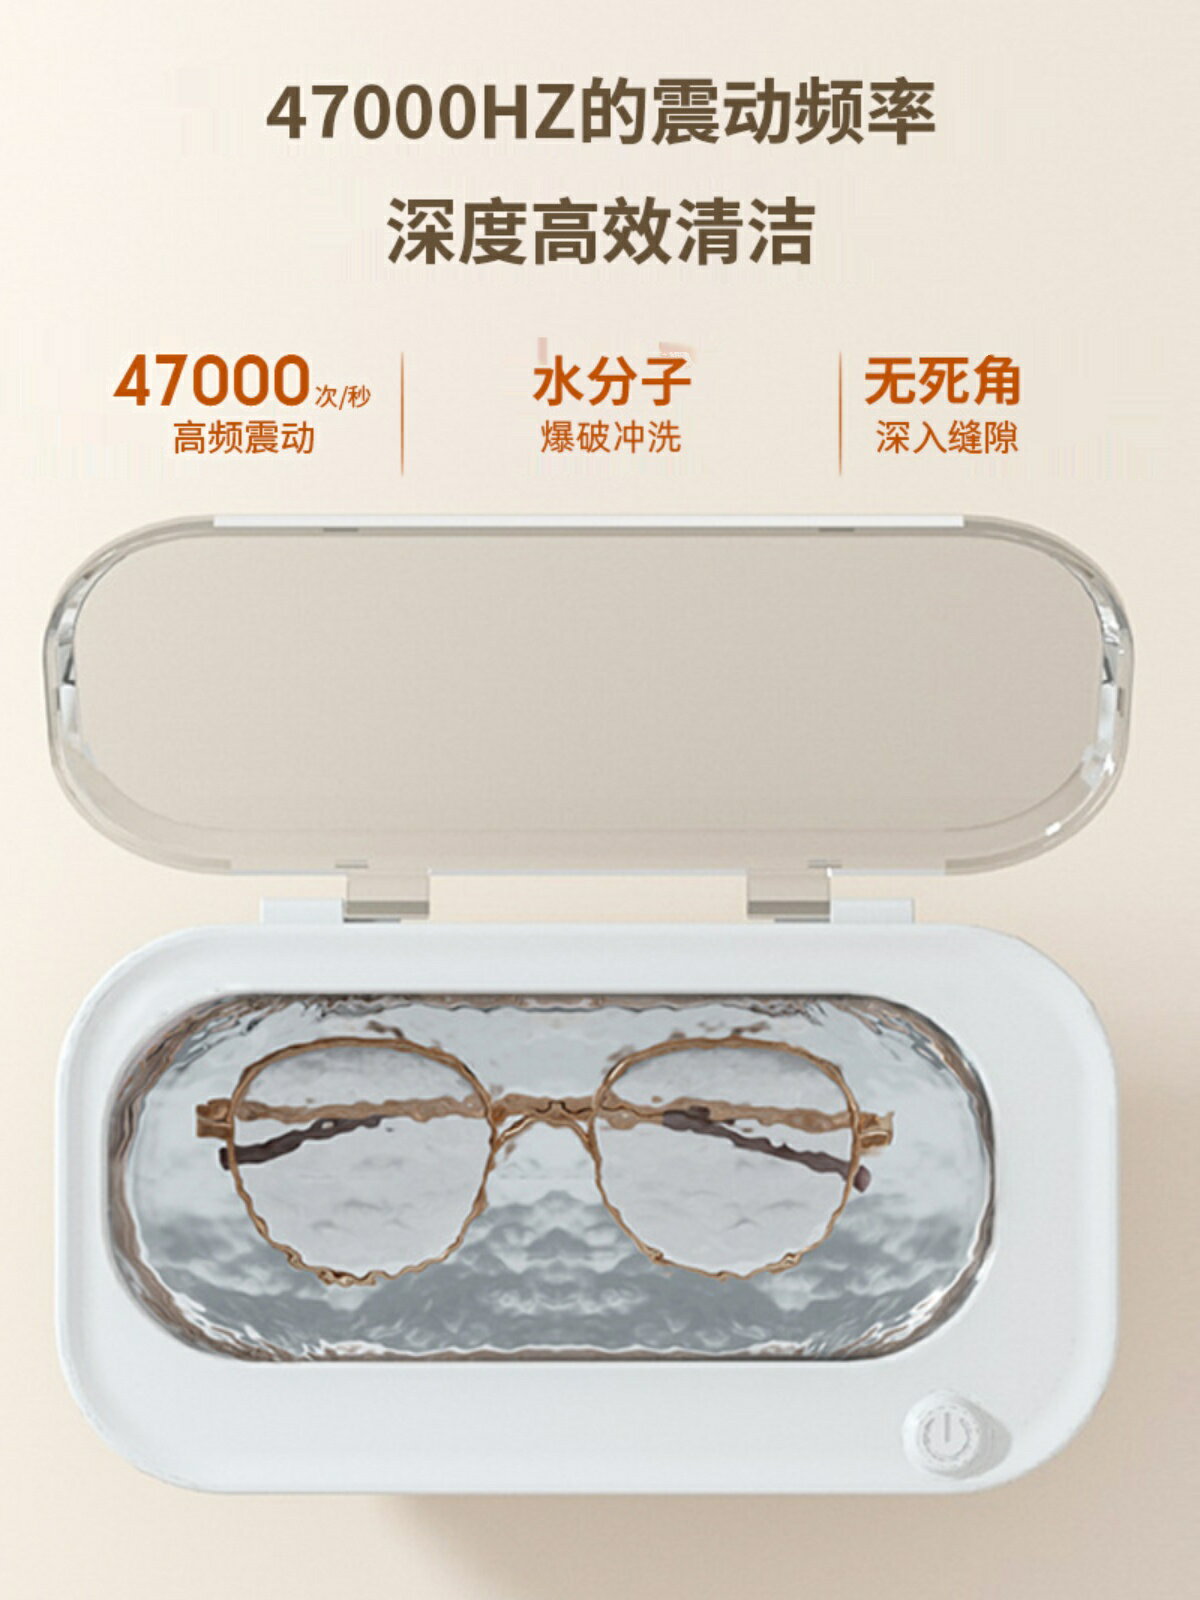 110V伏超聲波清洗機洗眼鏡機家用便攜式首飾牙套手表自動清洗器